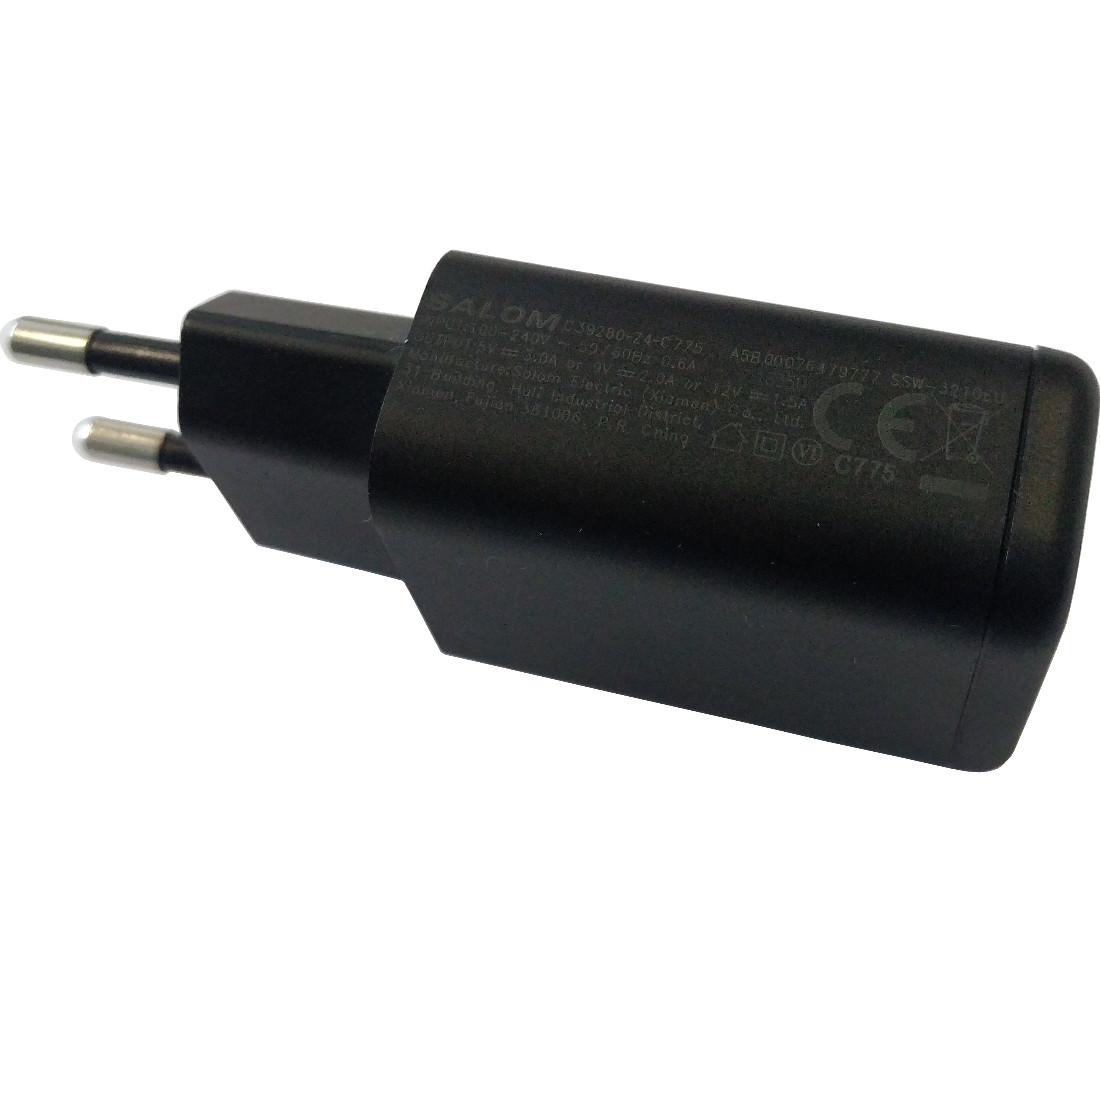 Gigaset USB Chargeur Cable data d'origine ECB-DU4AWE pour Gigaset GS160 